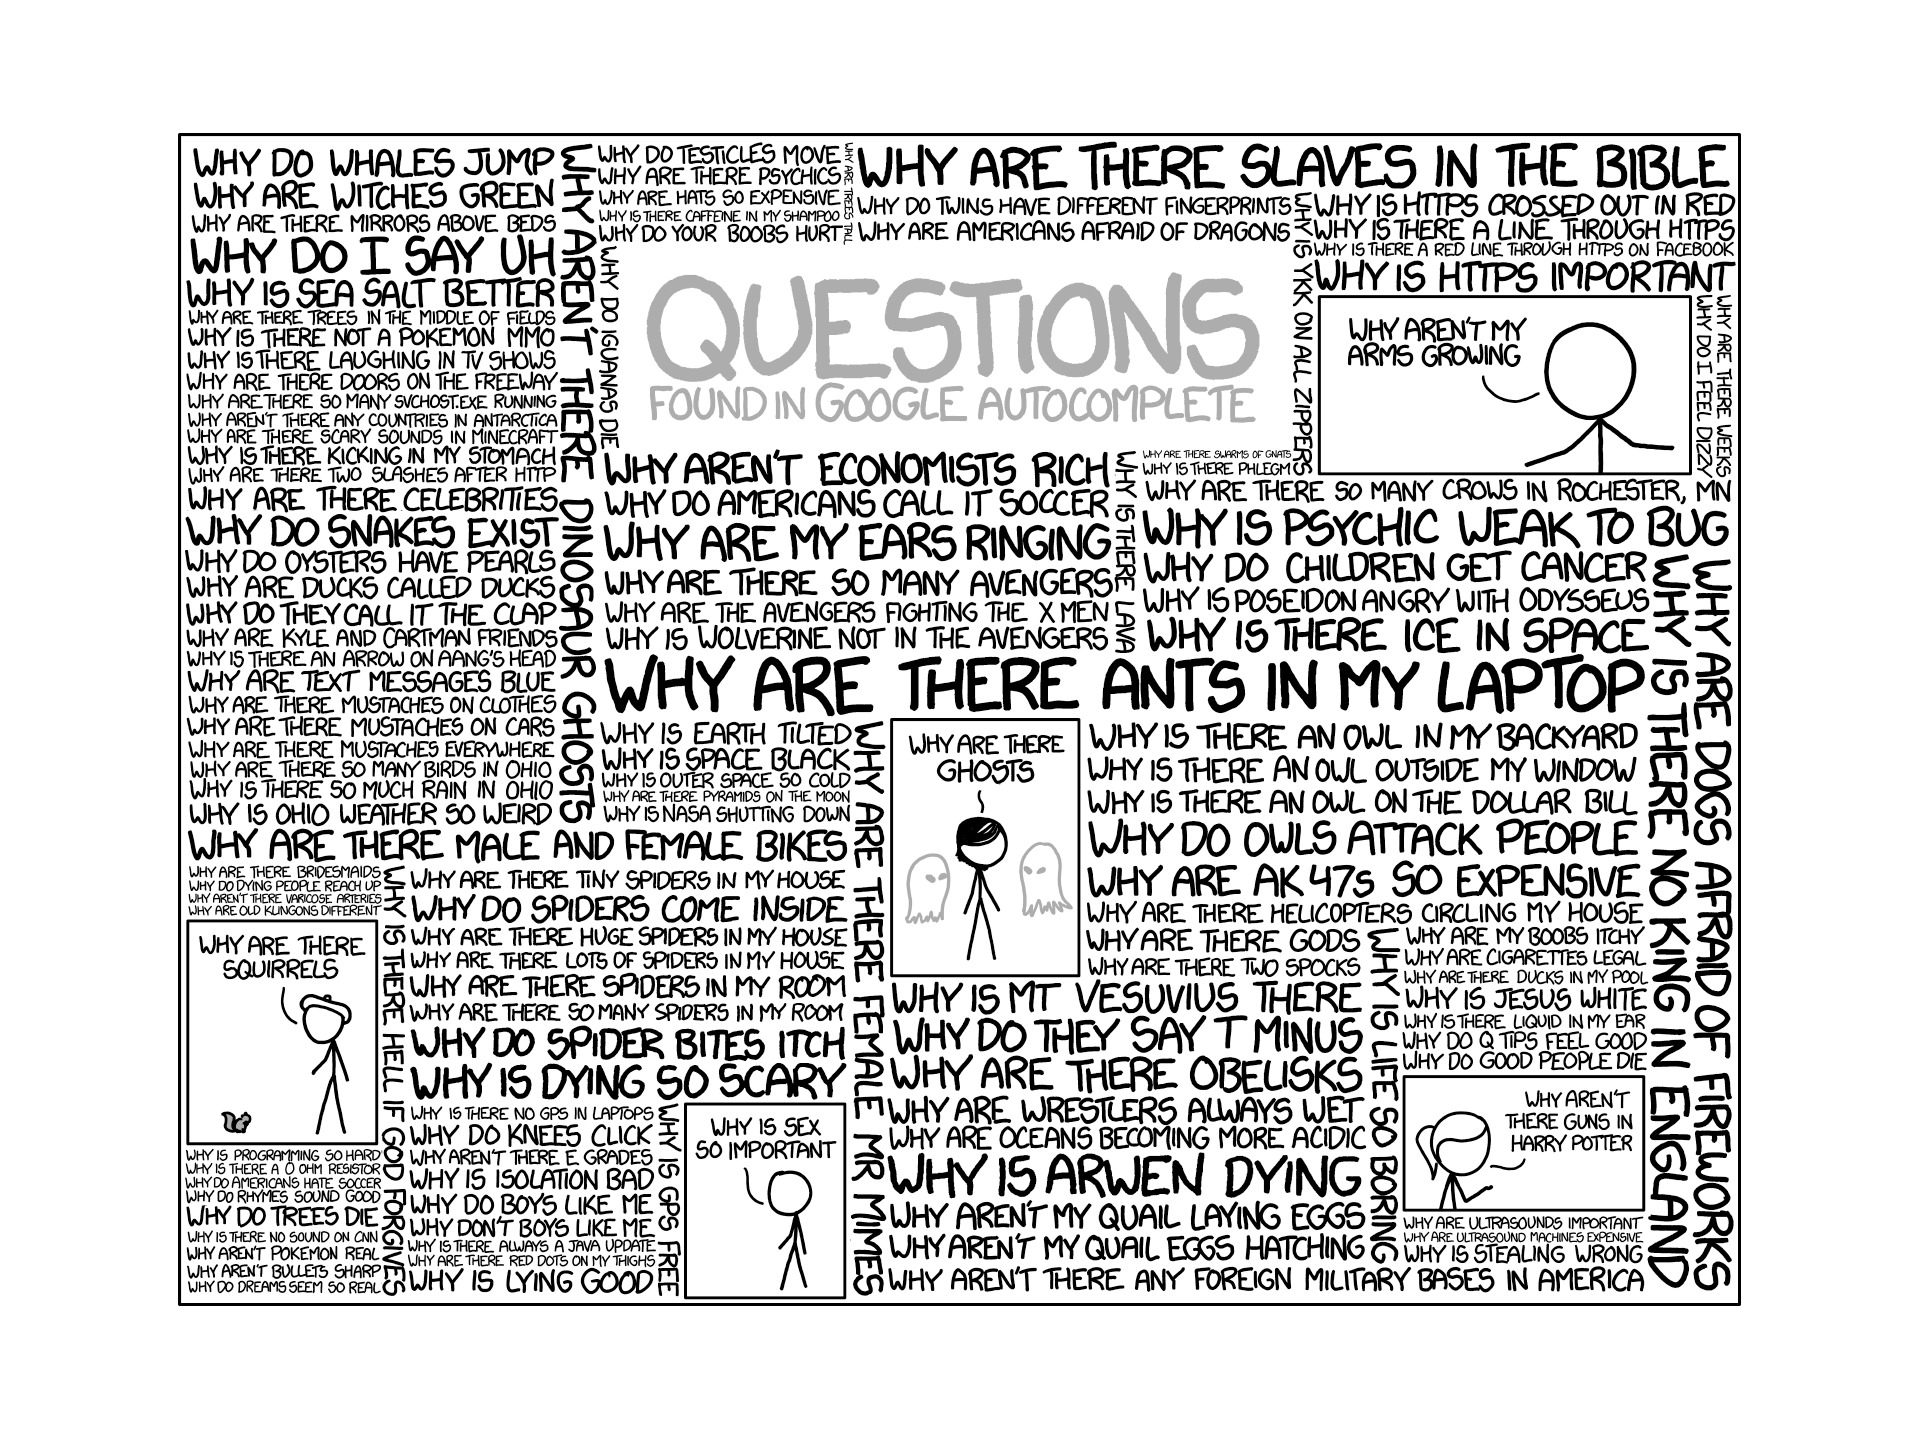 xkcd, Comics, Questions, Google, Internet, Humor Wallpaper